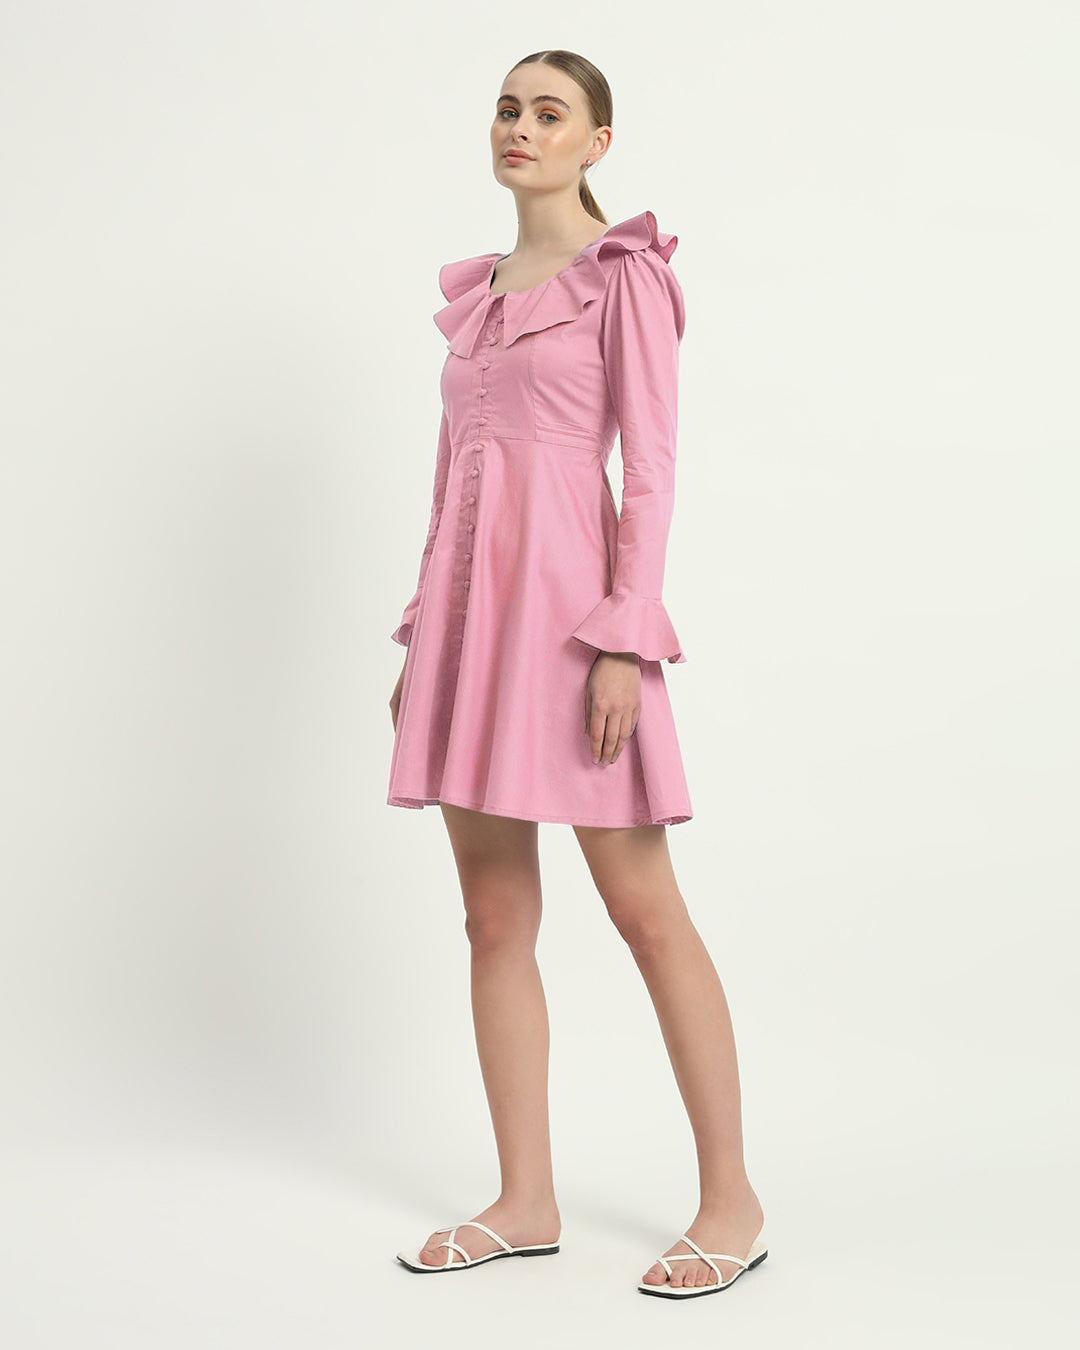 The Fondant Pink Fredonia Cotton Dress